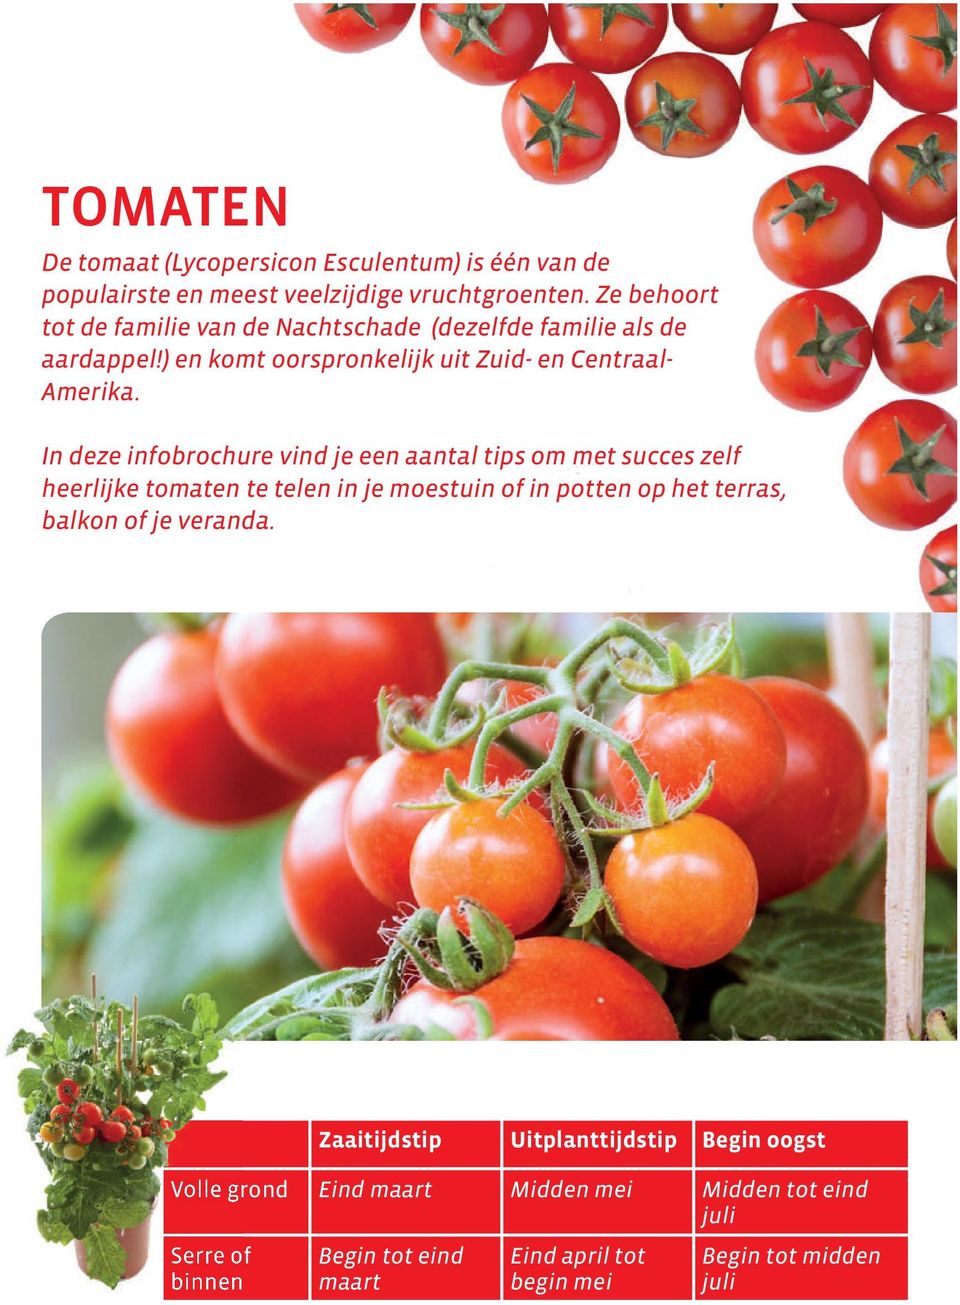 In deze infobrochure vind je een aantal tips om met succes zelf heerlijke tomaten te telen in je moestuin of in potten op het terras, balkon of